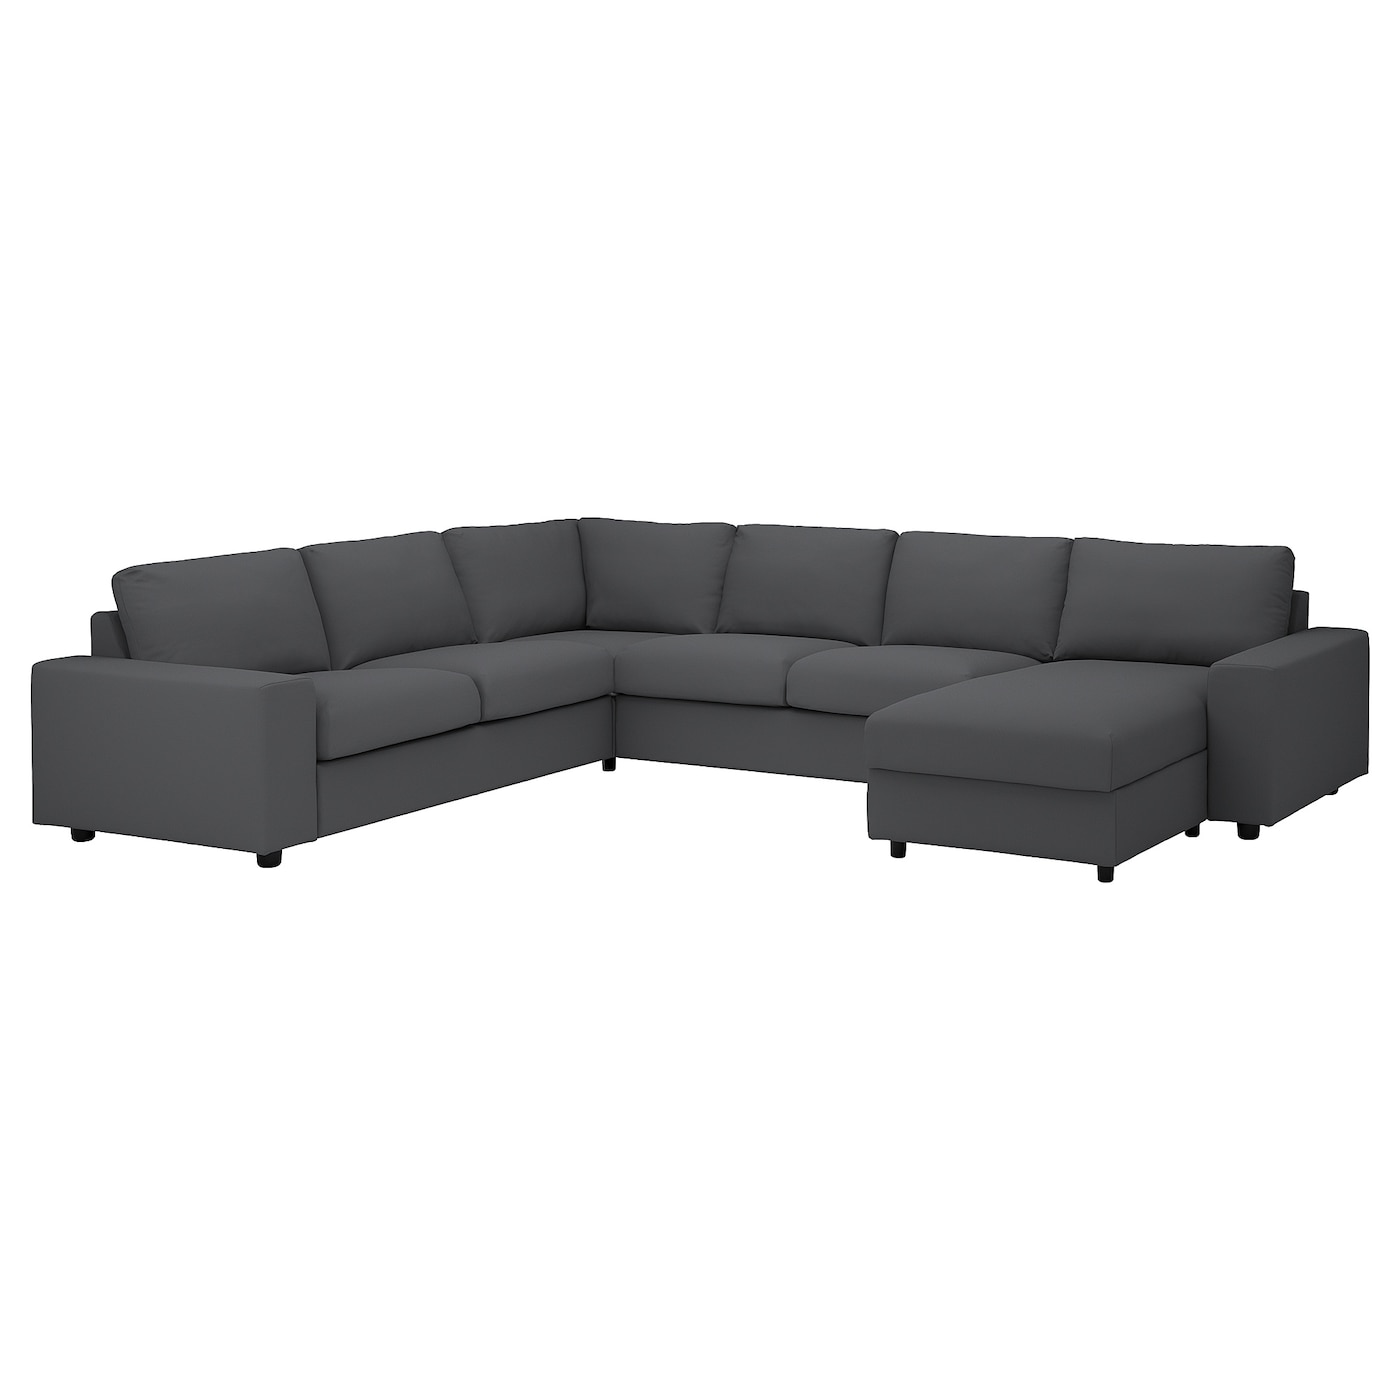 ВИМЛЕ Диван угловой, 5-местный. диван+диван, с широкими подлокотниками/Халларп серый VIMLE IKEA диван угловой bizzotto 0662861